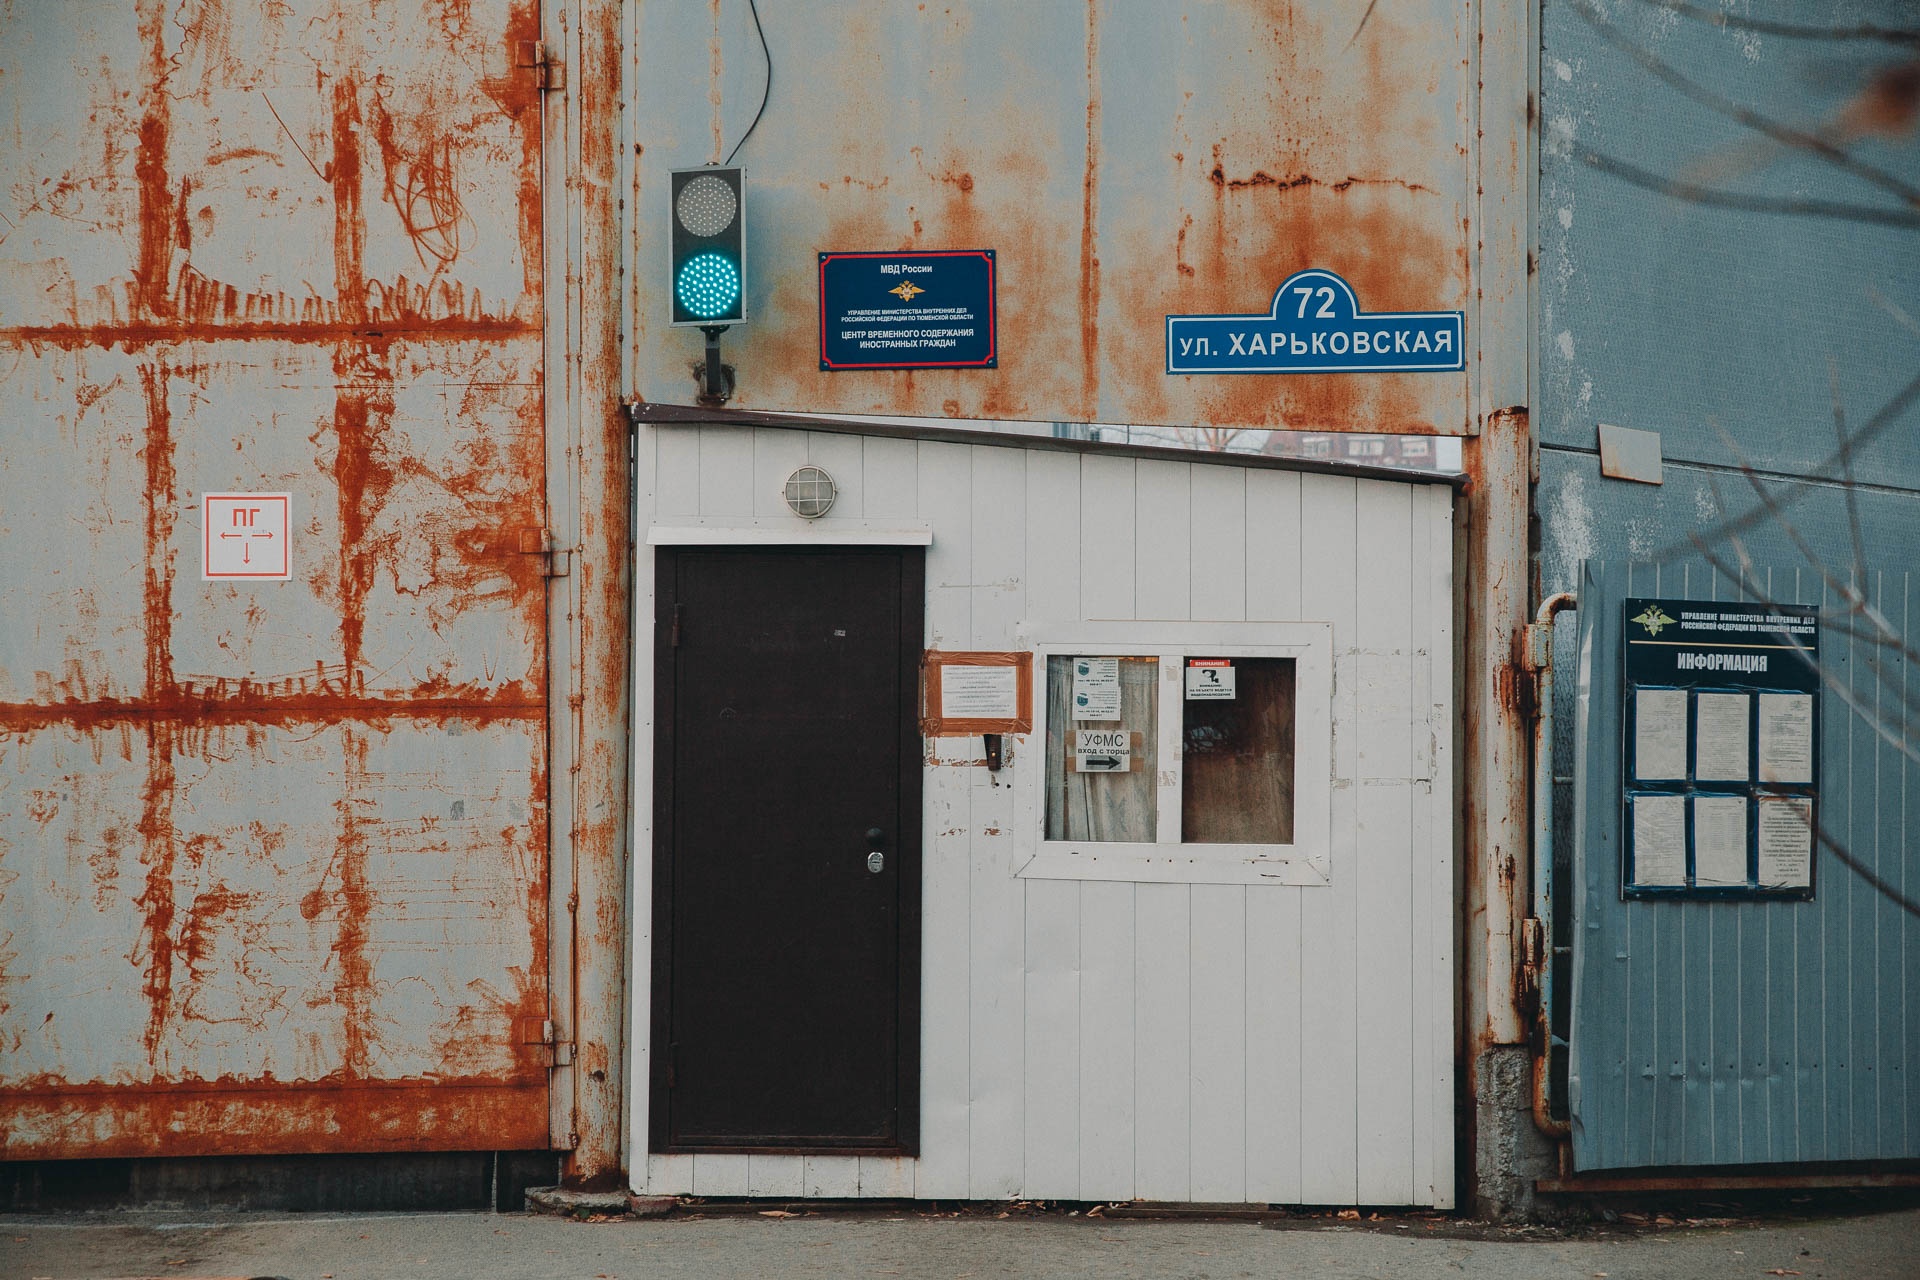 На Харьковской мигрантов встречает дверь с вывеской «Центр временного содержания». Вход в УФМС — с другой стороны